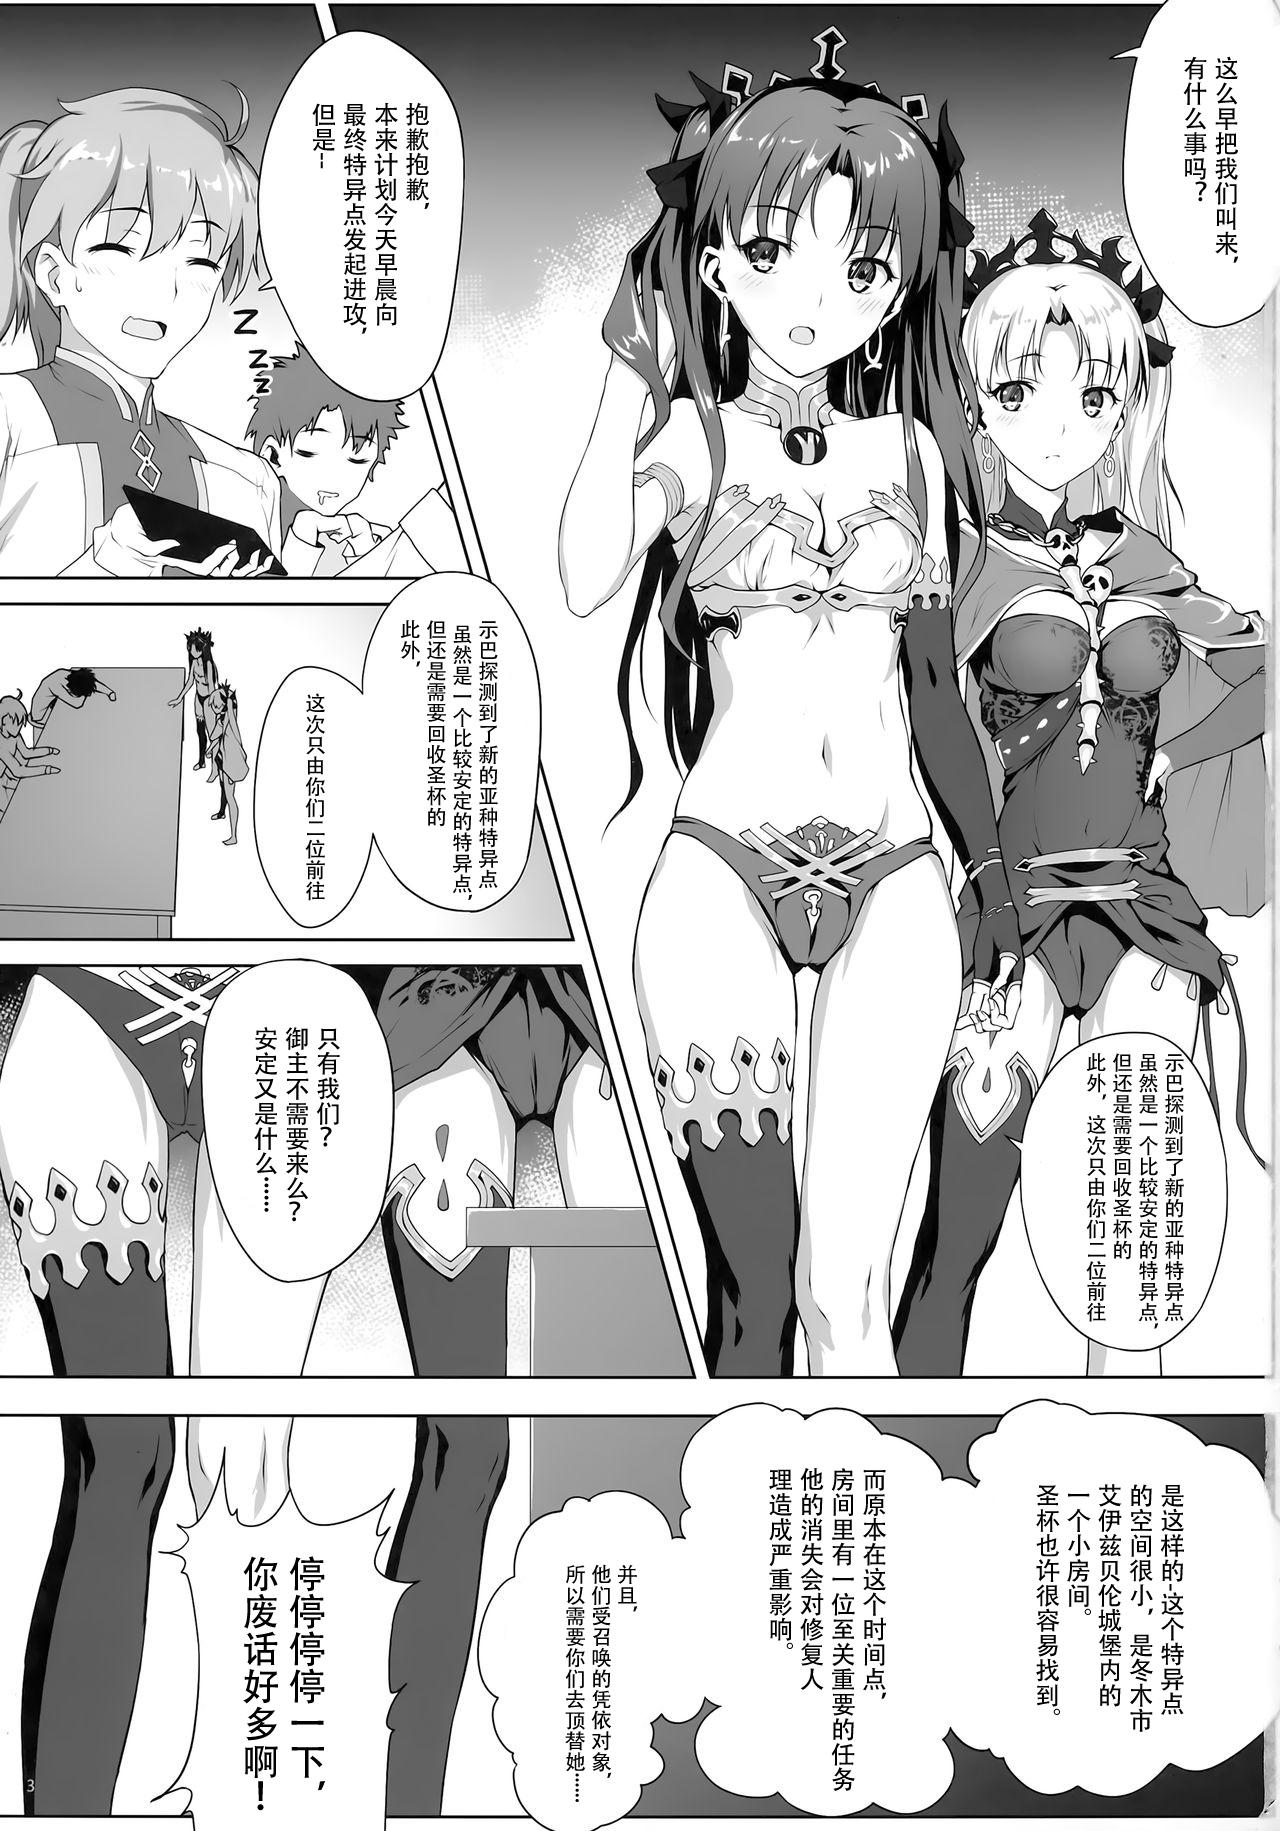 Sharing Tenkuu to Meikai no Ori - Fate grand order Arabe - Page 4